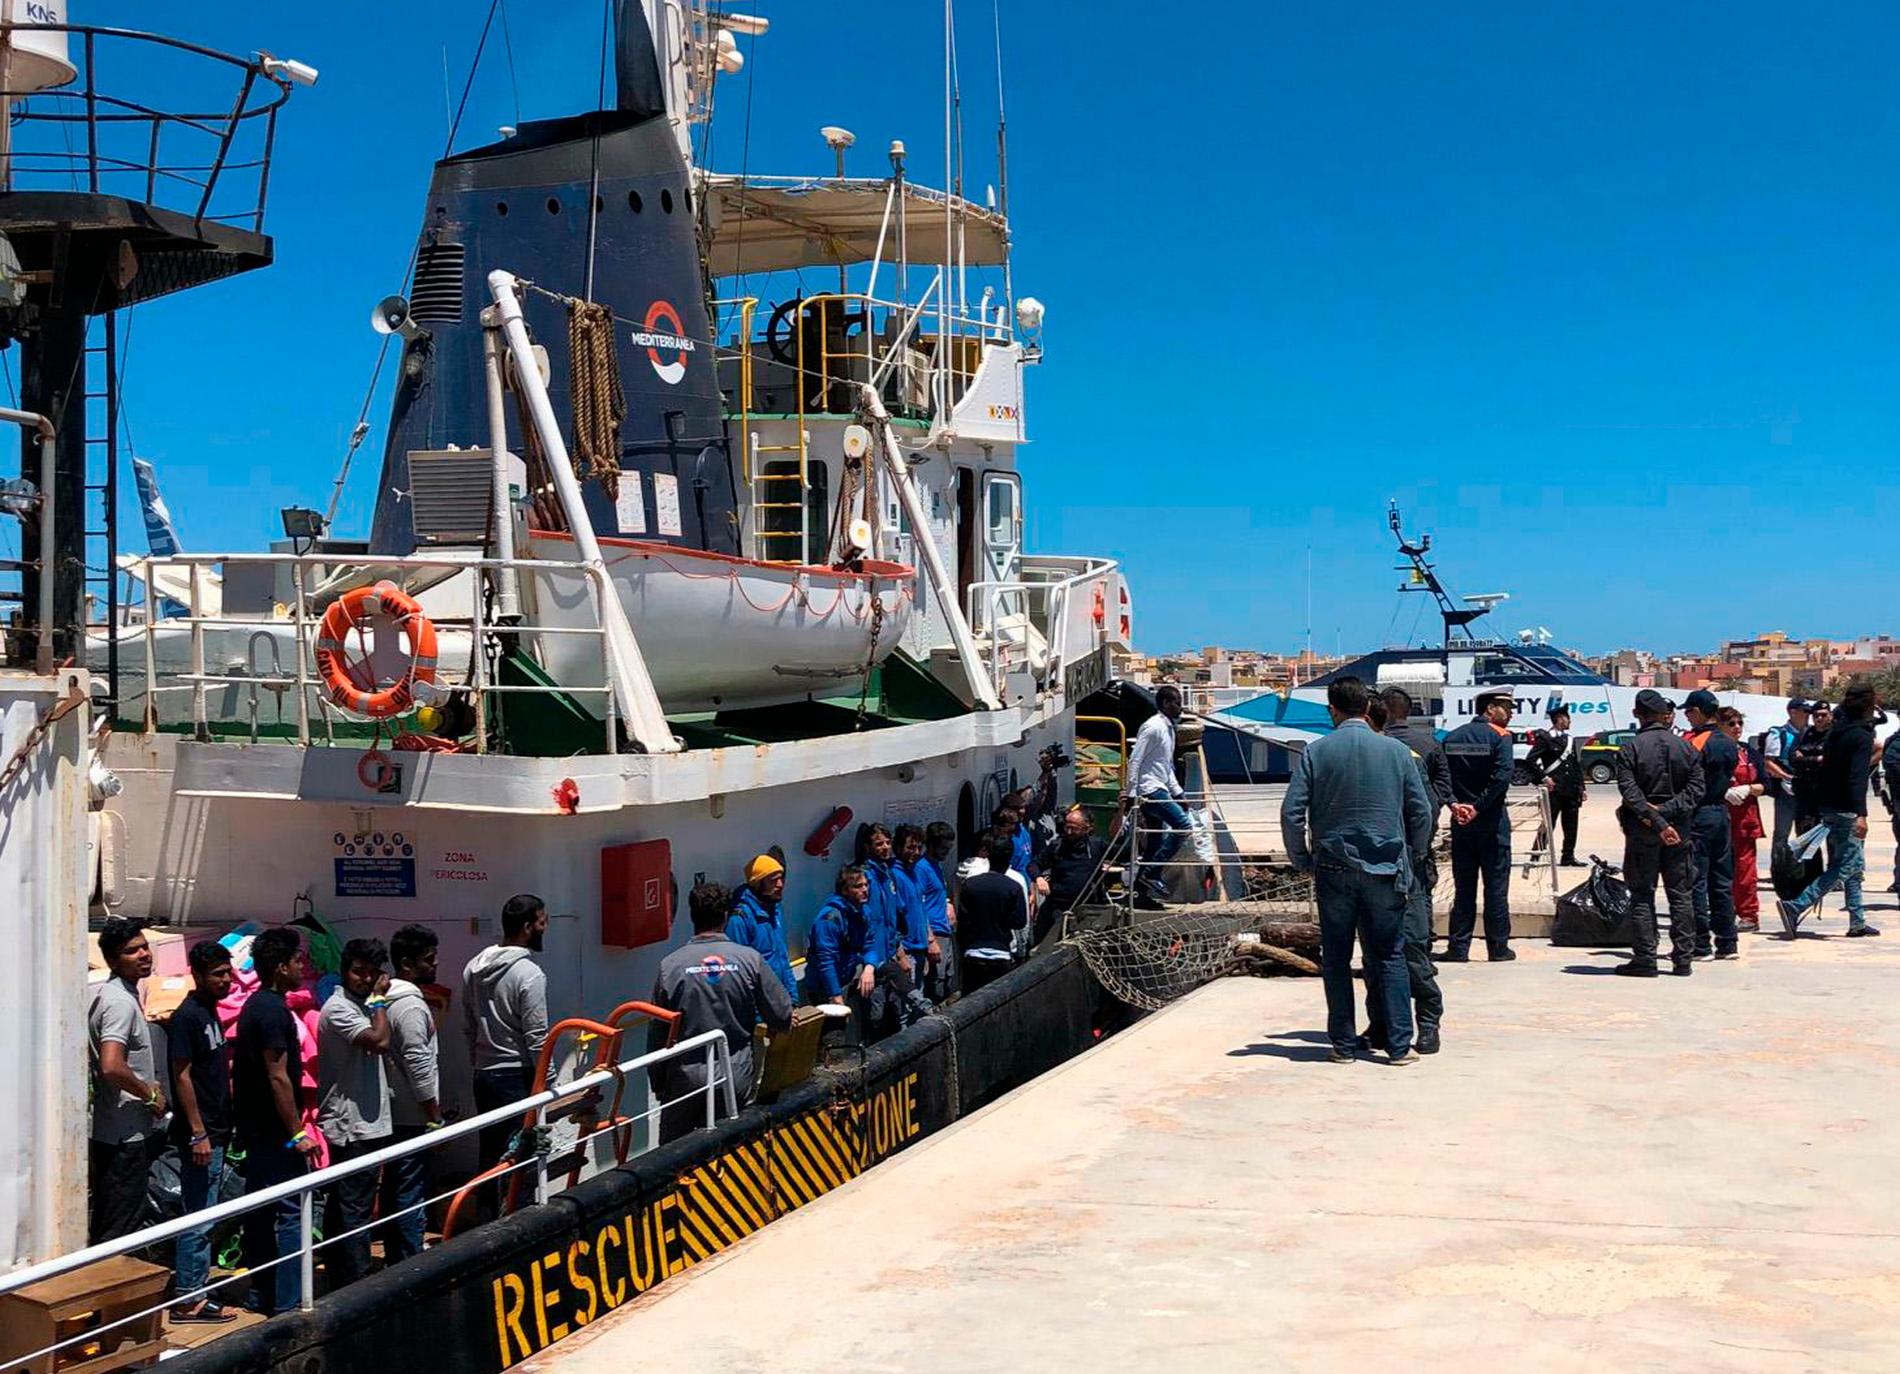 Mare Jonio har vid flera tillfällen räddat migranter på Medlehavet. Här får migranter lämna fartyget på Lampedusa efter en insats i maj i år. Arkivbild.